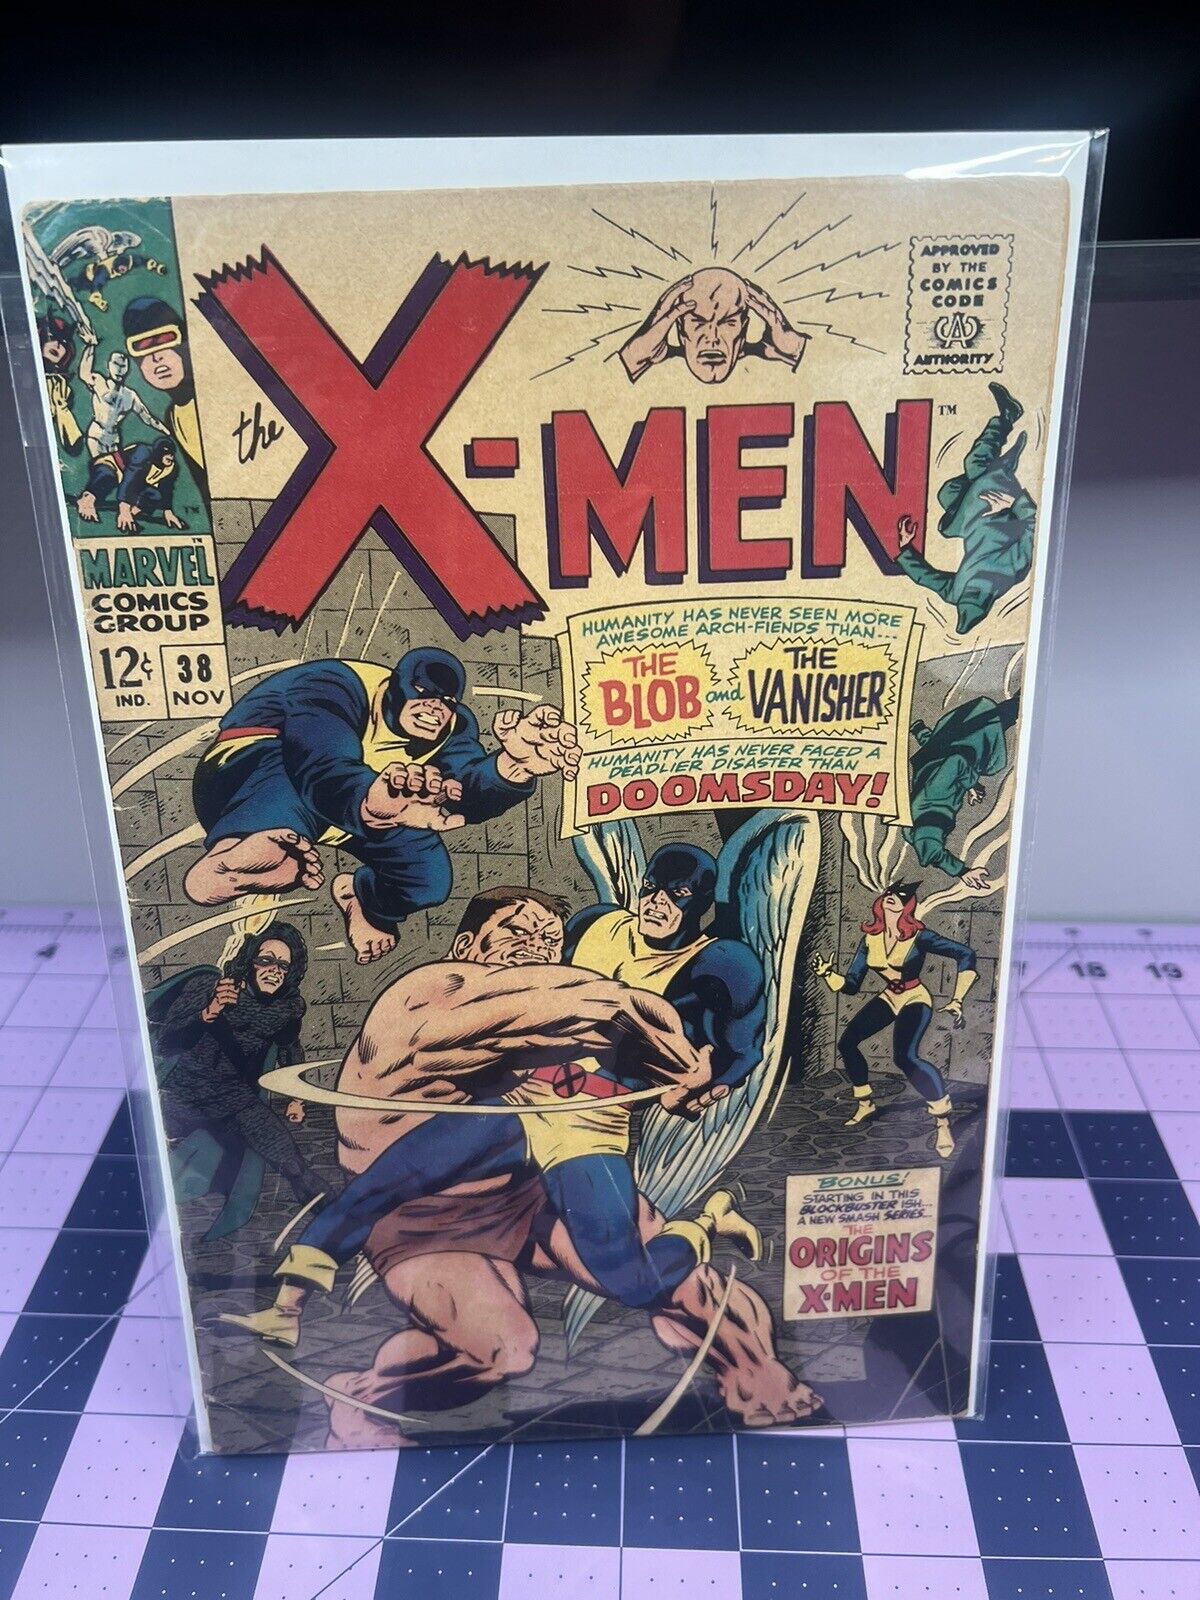 X-Men #38 Blob The Vanisher Origins of the X-Men Begins Marvel 1967